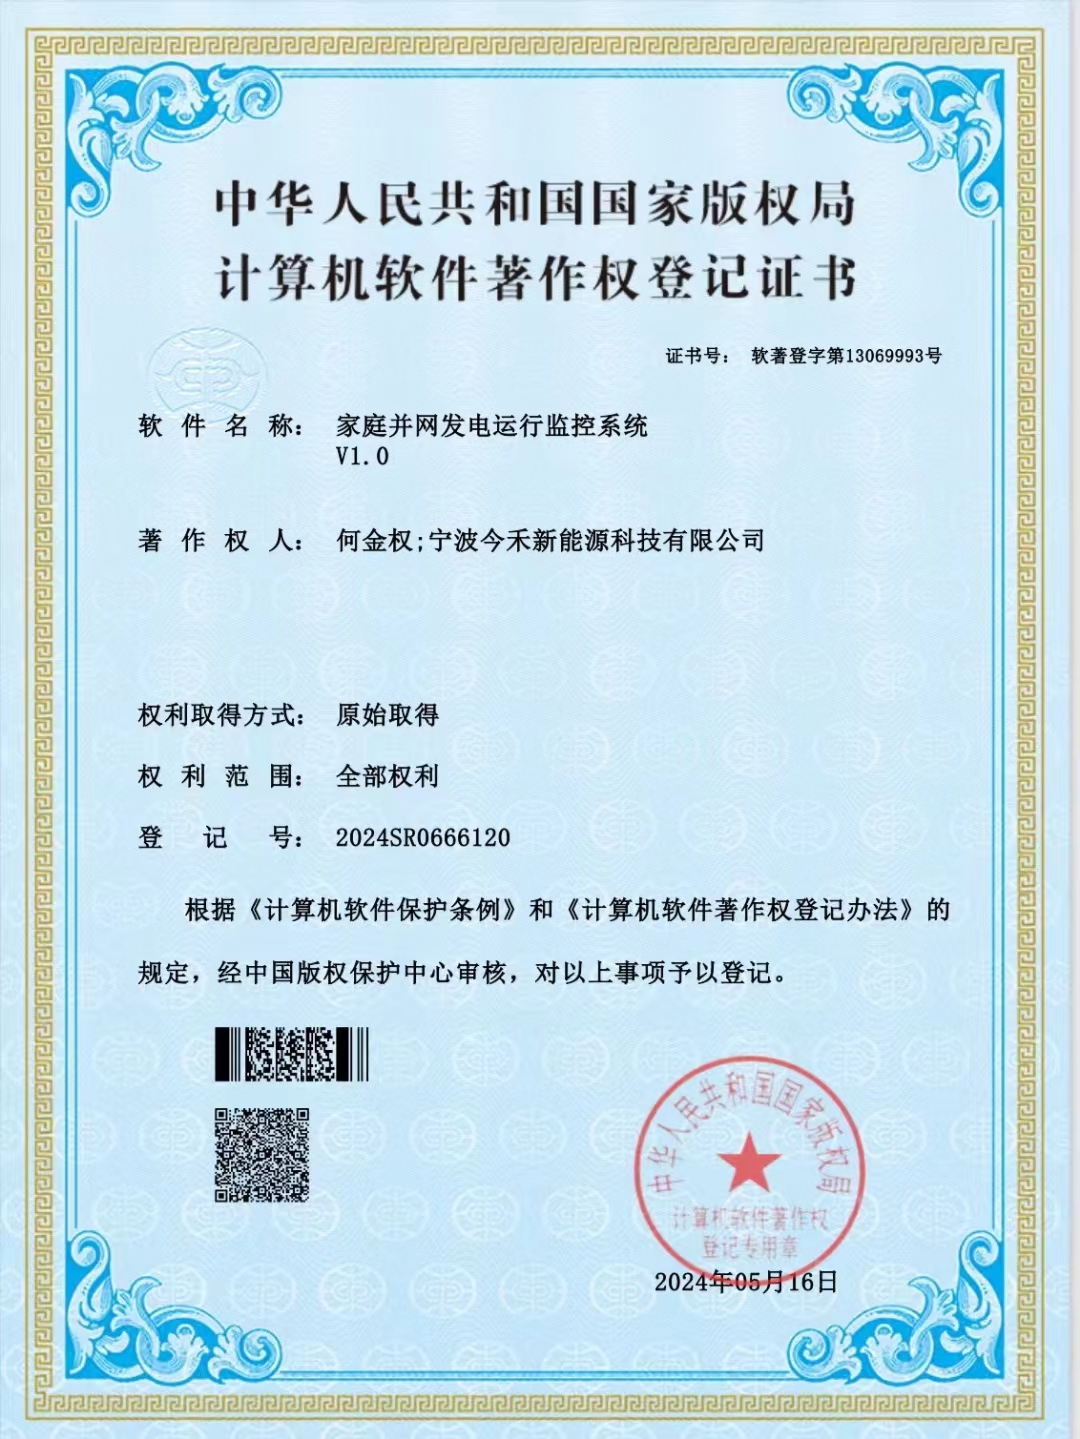 宁波今禾新能源科技有限公司，软件著作权获得国家版权局审核通过，并颁发登记证书。